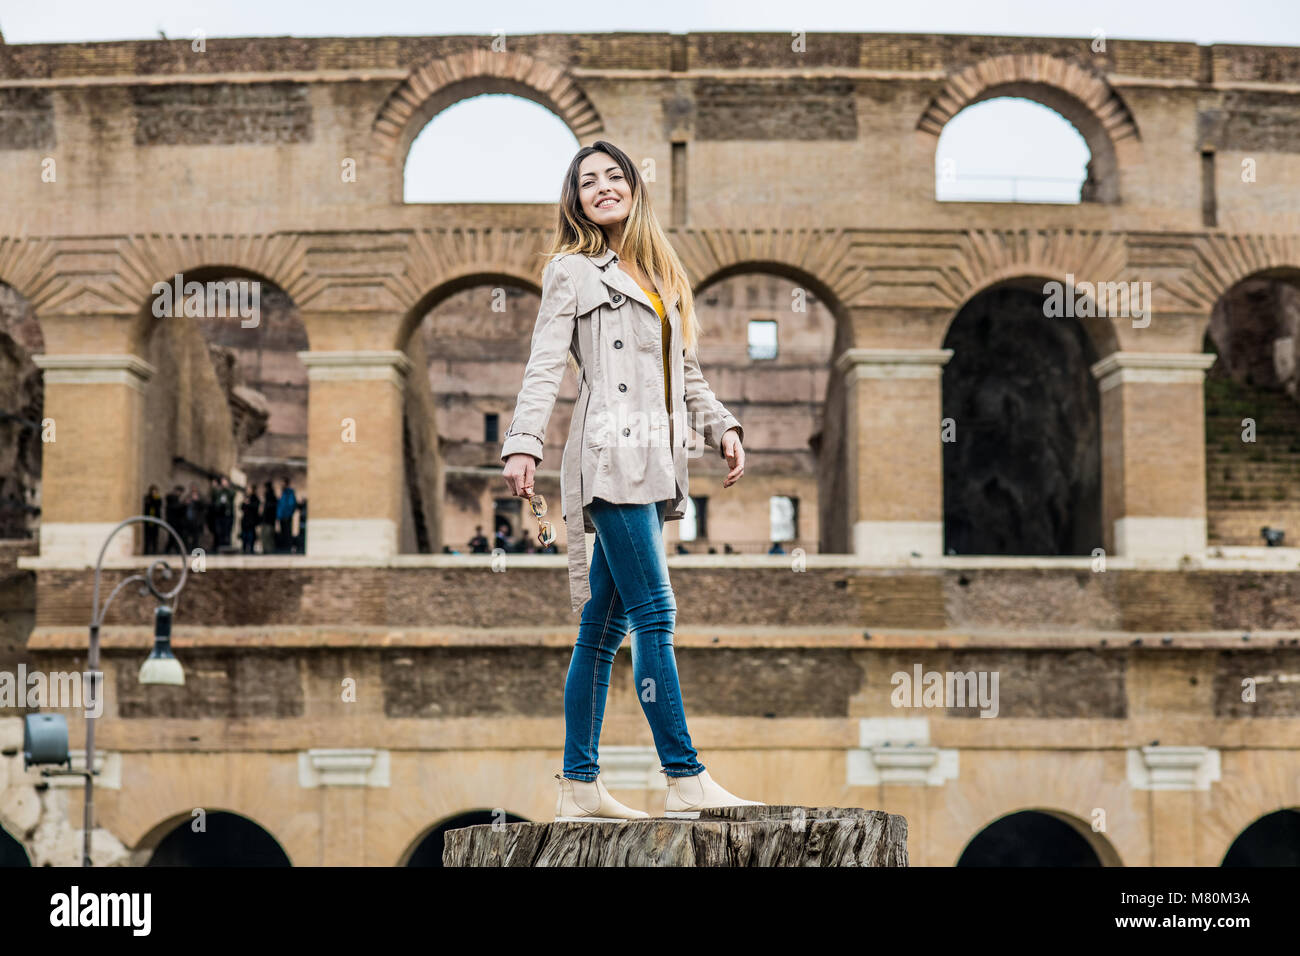 Junge hübsche touristische Frau lächelnd und am Colosseum Monument in Rom Italien posing Stockfoto